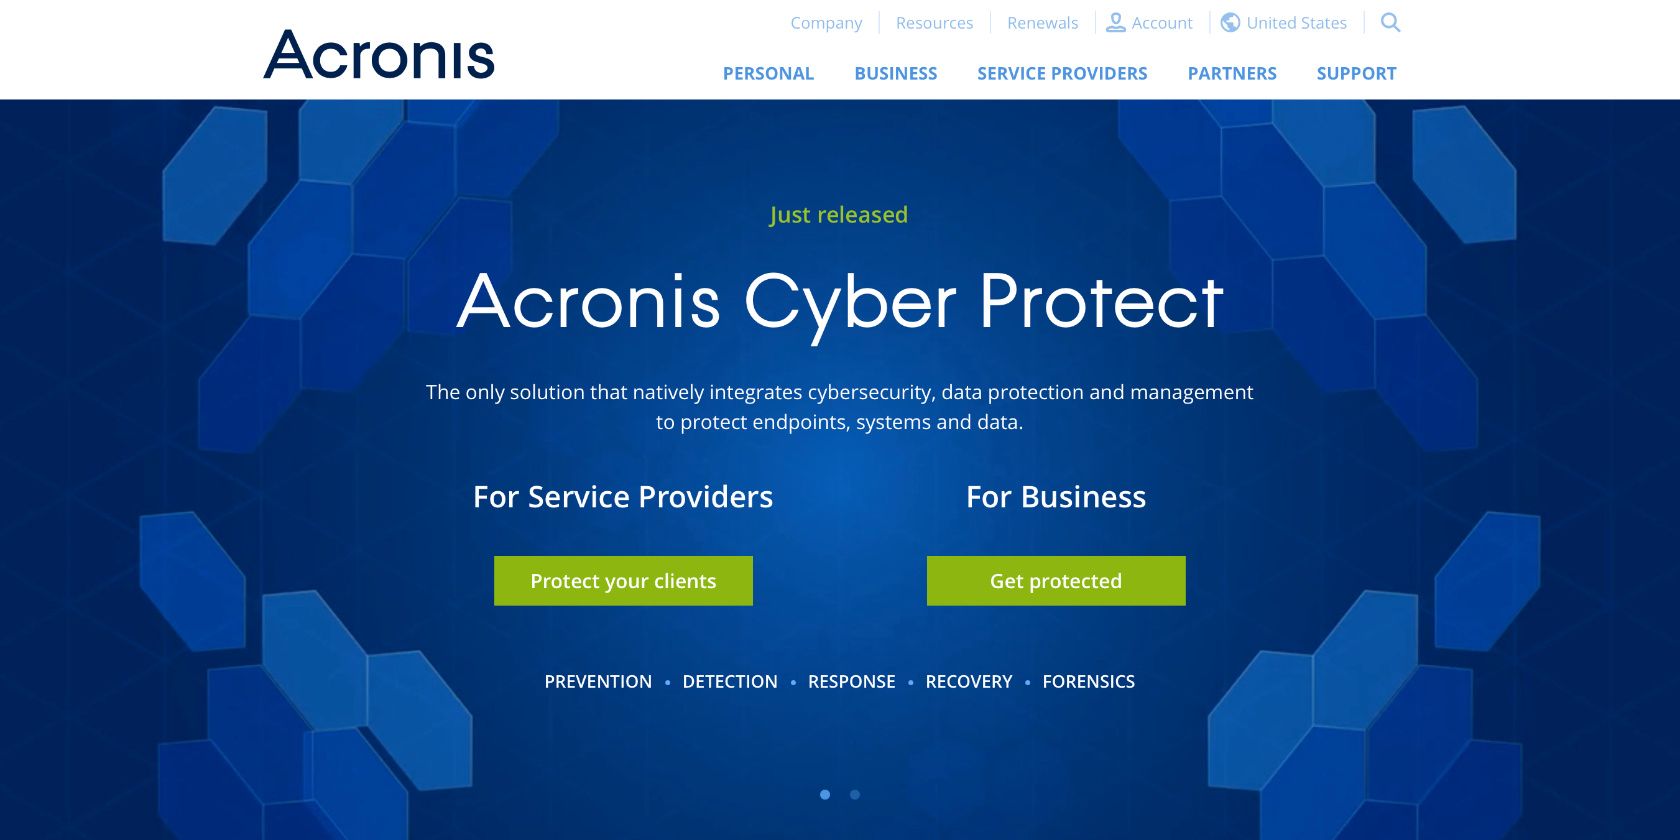 Acronis True Image website homepage